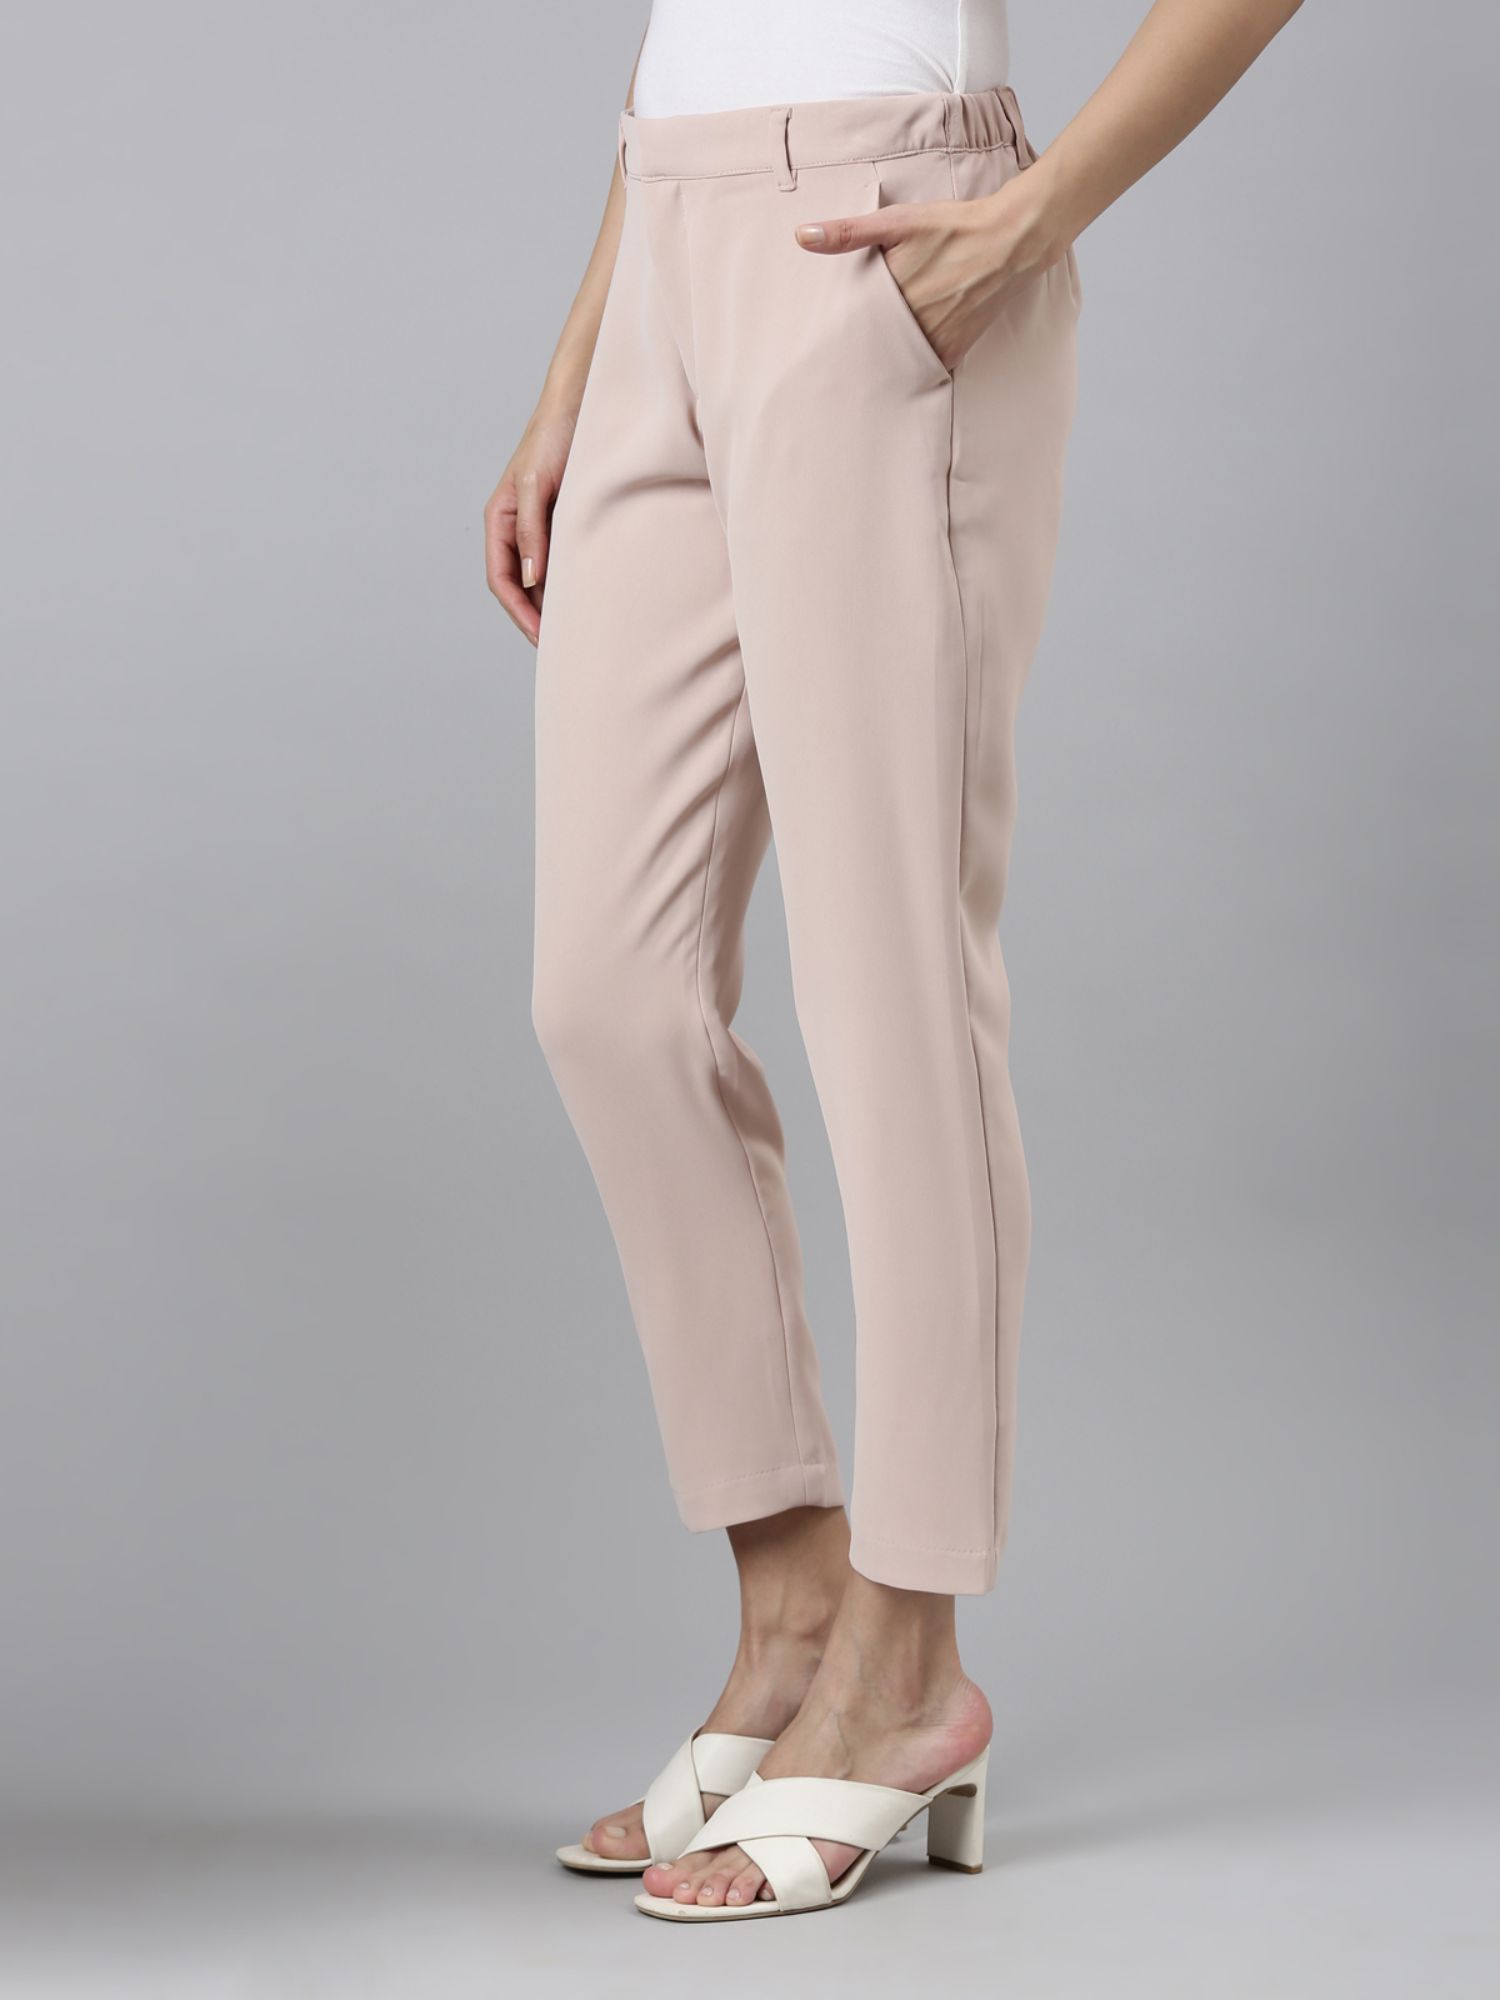 Buy Dusty Pink Linen Elasticated Wide Leg Formal Trouser Online   FableStreet